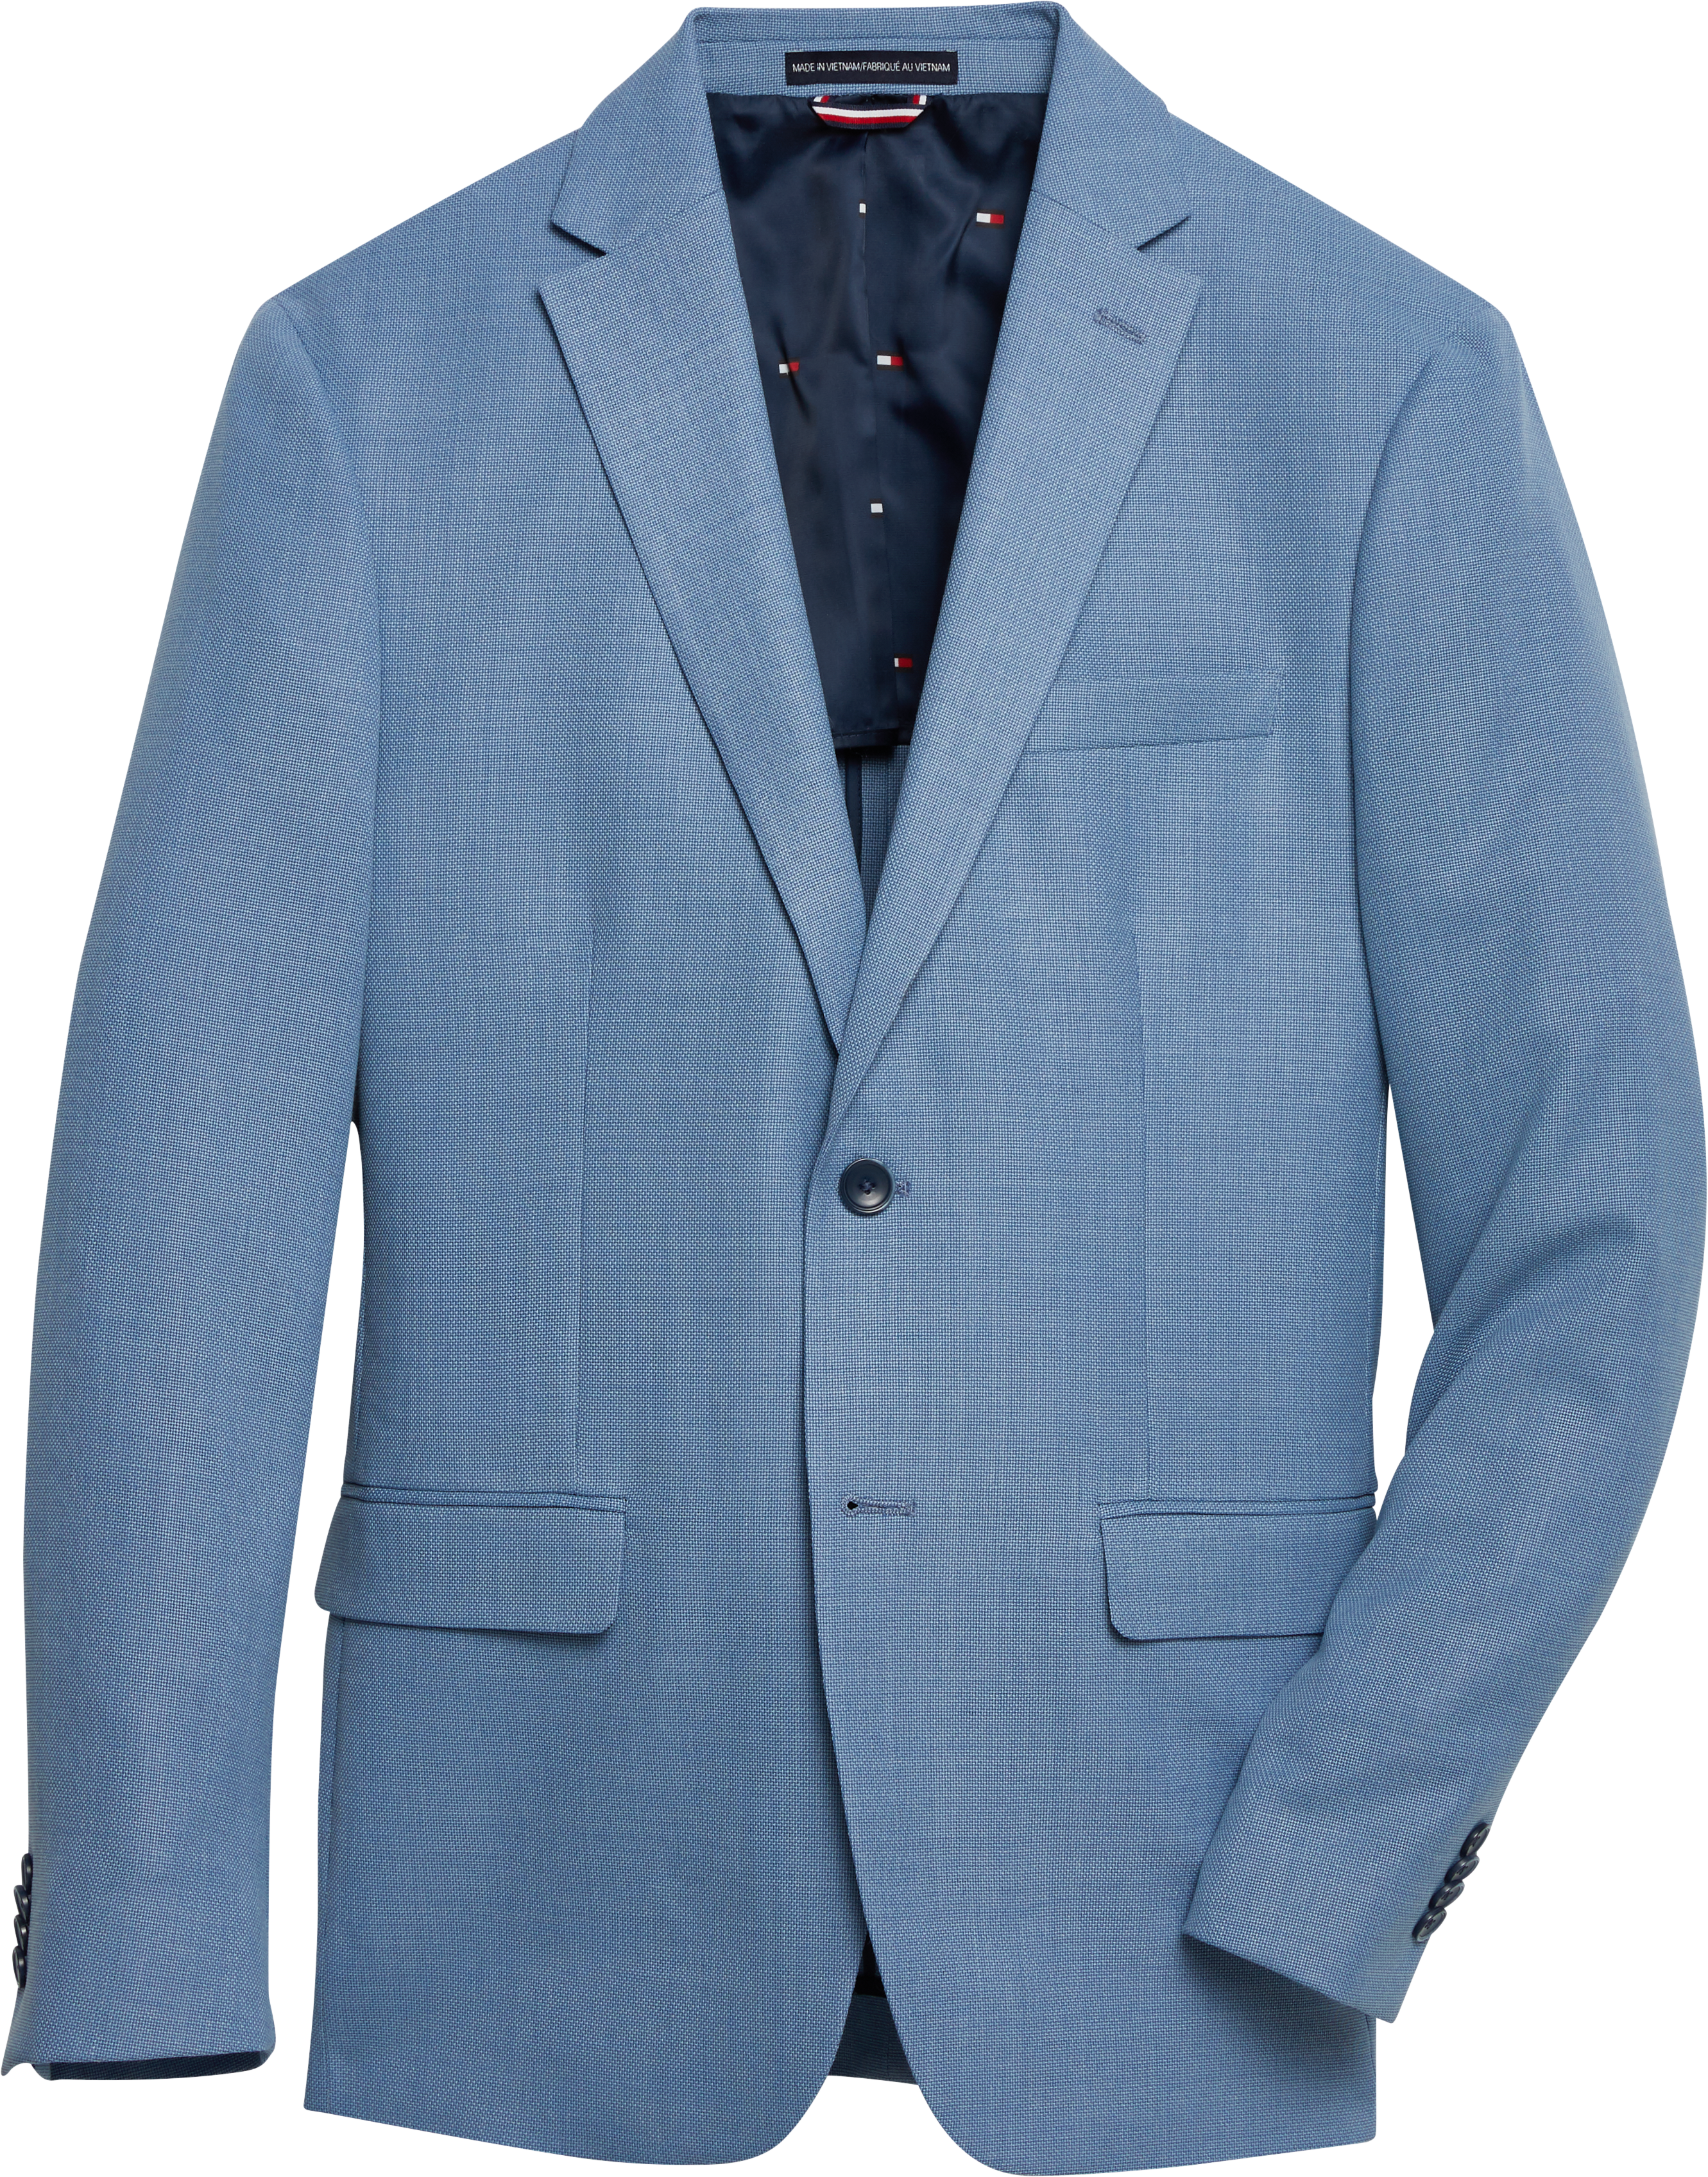 Tommy Hilfiger Light Blue Modern Fit Sport Coat - Men's Sale Men's Wearhouse